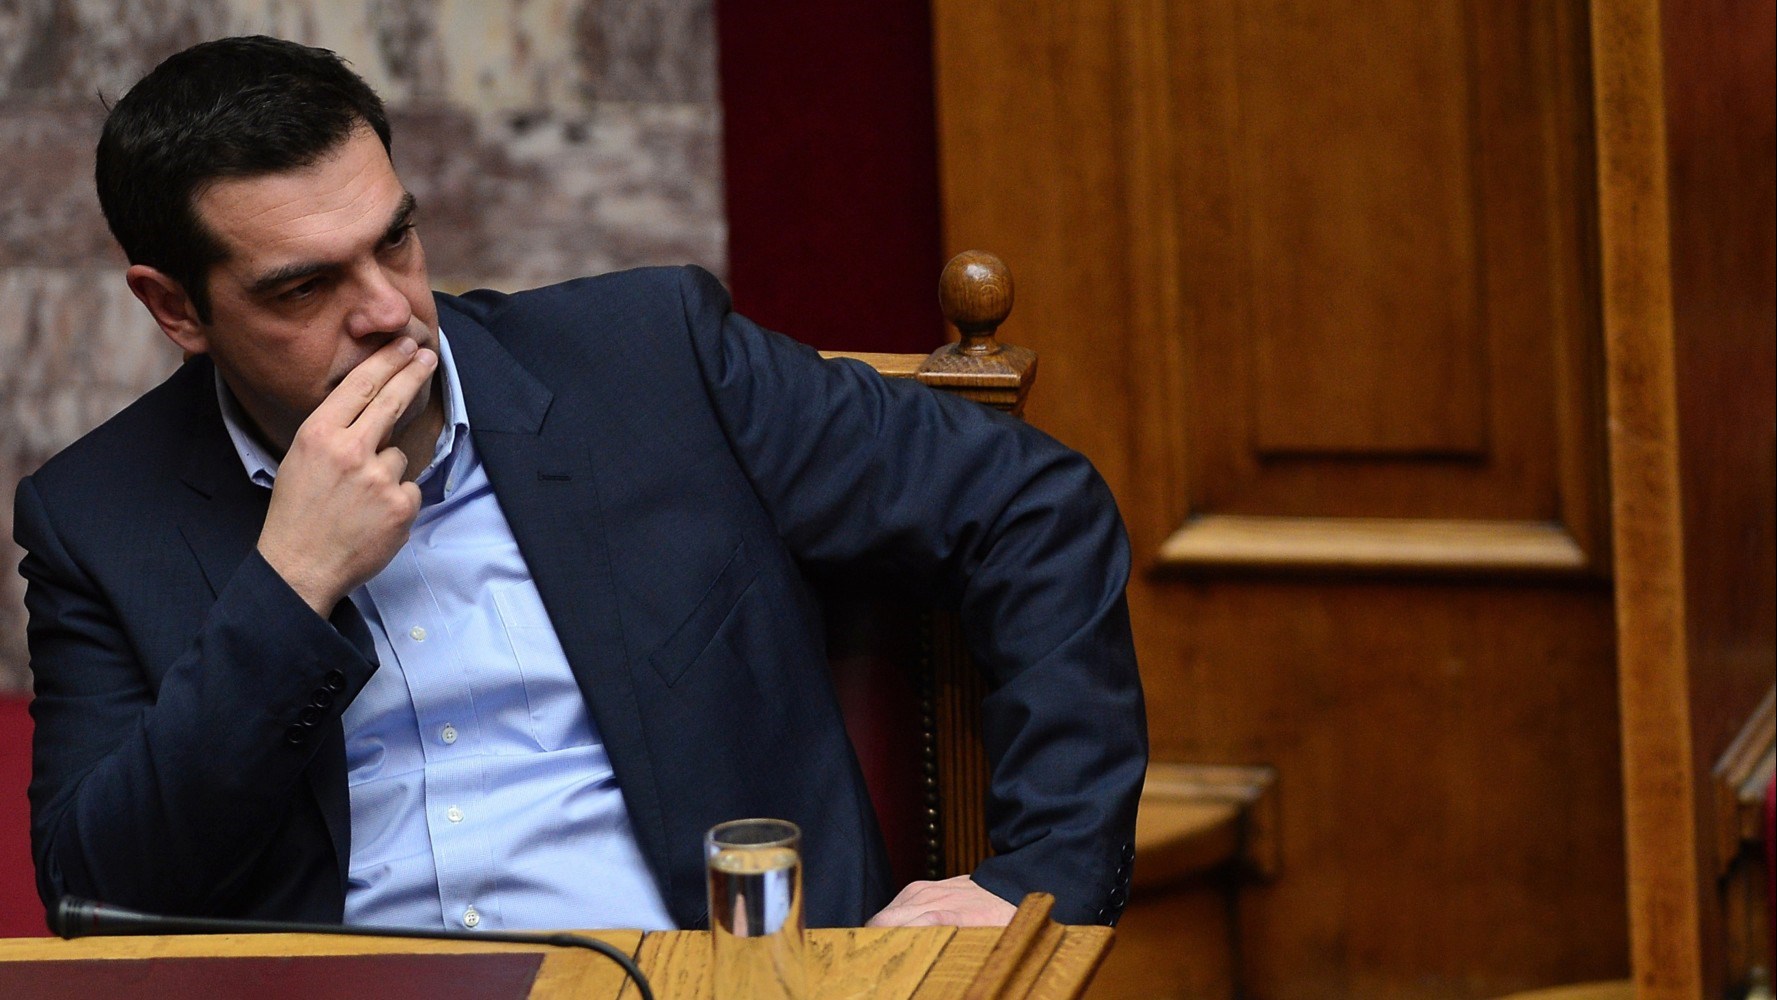 Συγκρότηση Προανακριτικής Επιτροπής για την υπόθεση Novartis θα εισηγηθεί ο πρωθυπουργός στην Κ.Ο. του ΣΥΡΙΖΑ